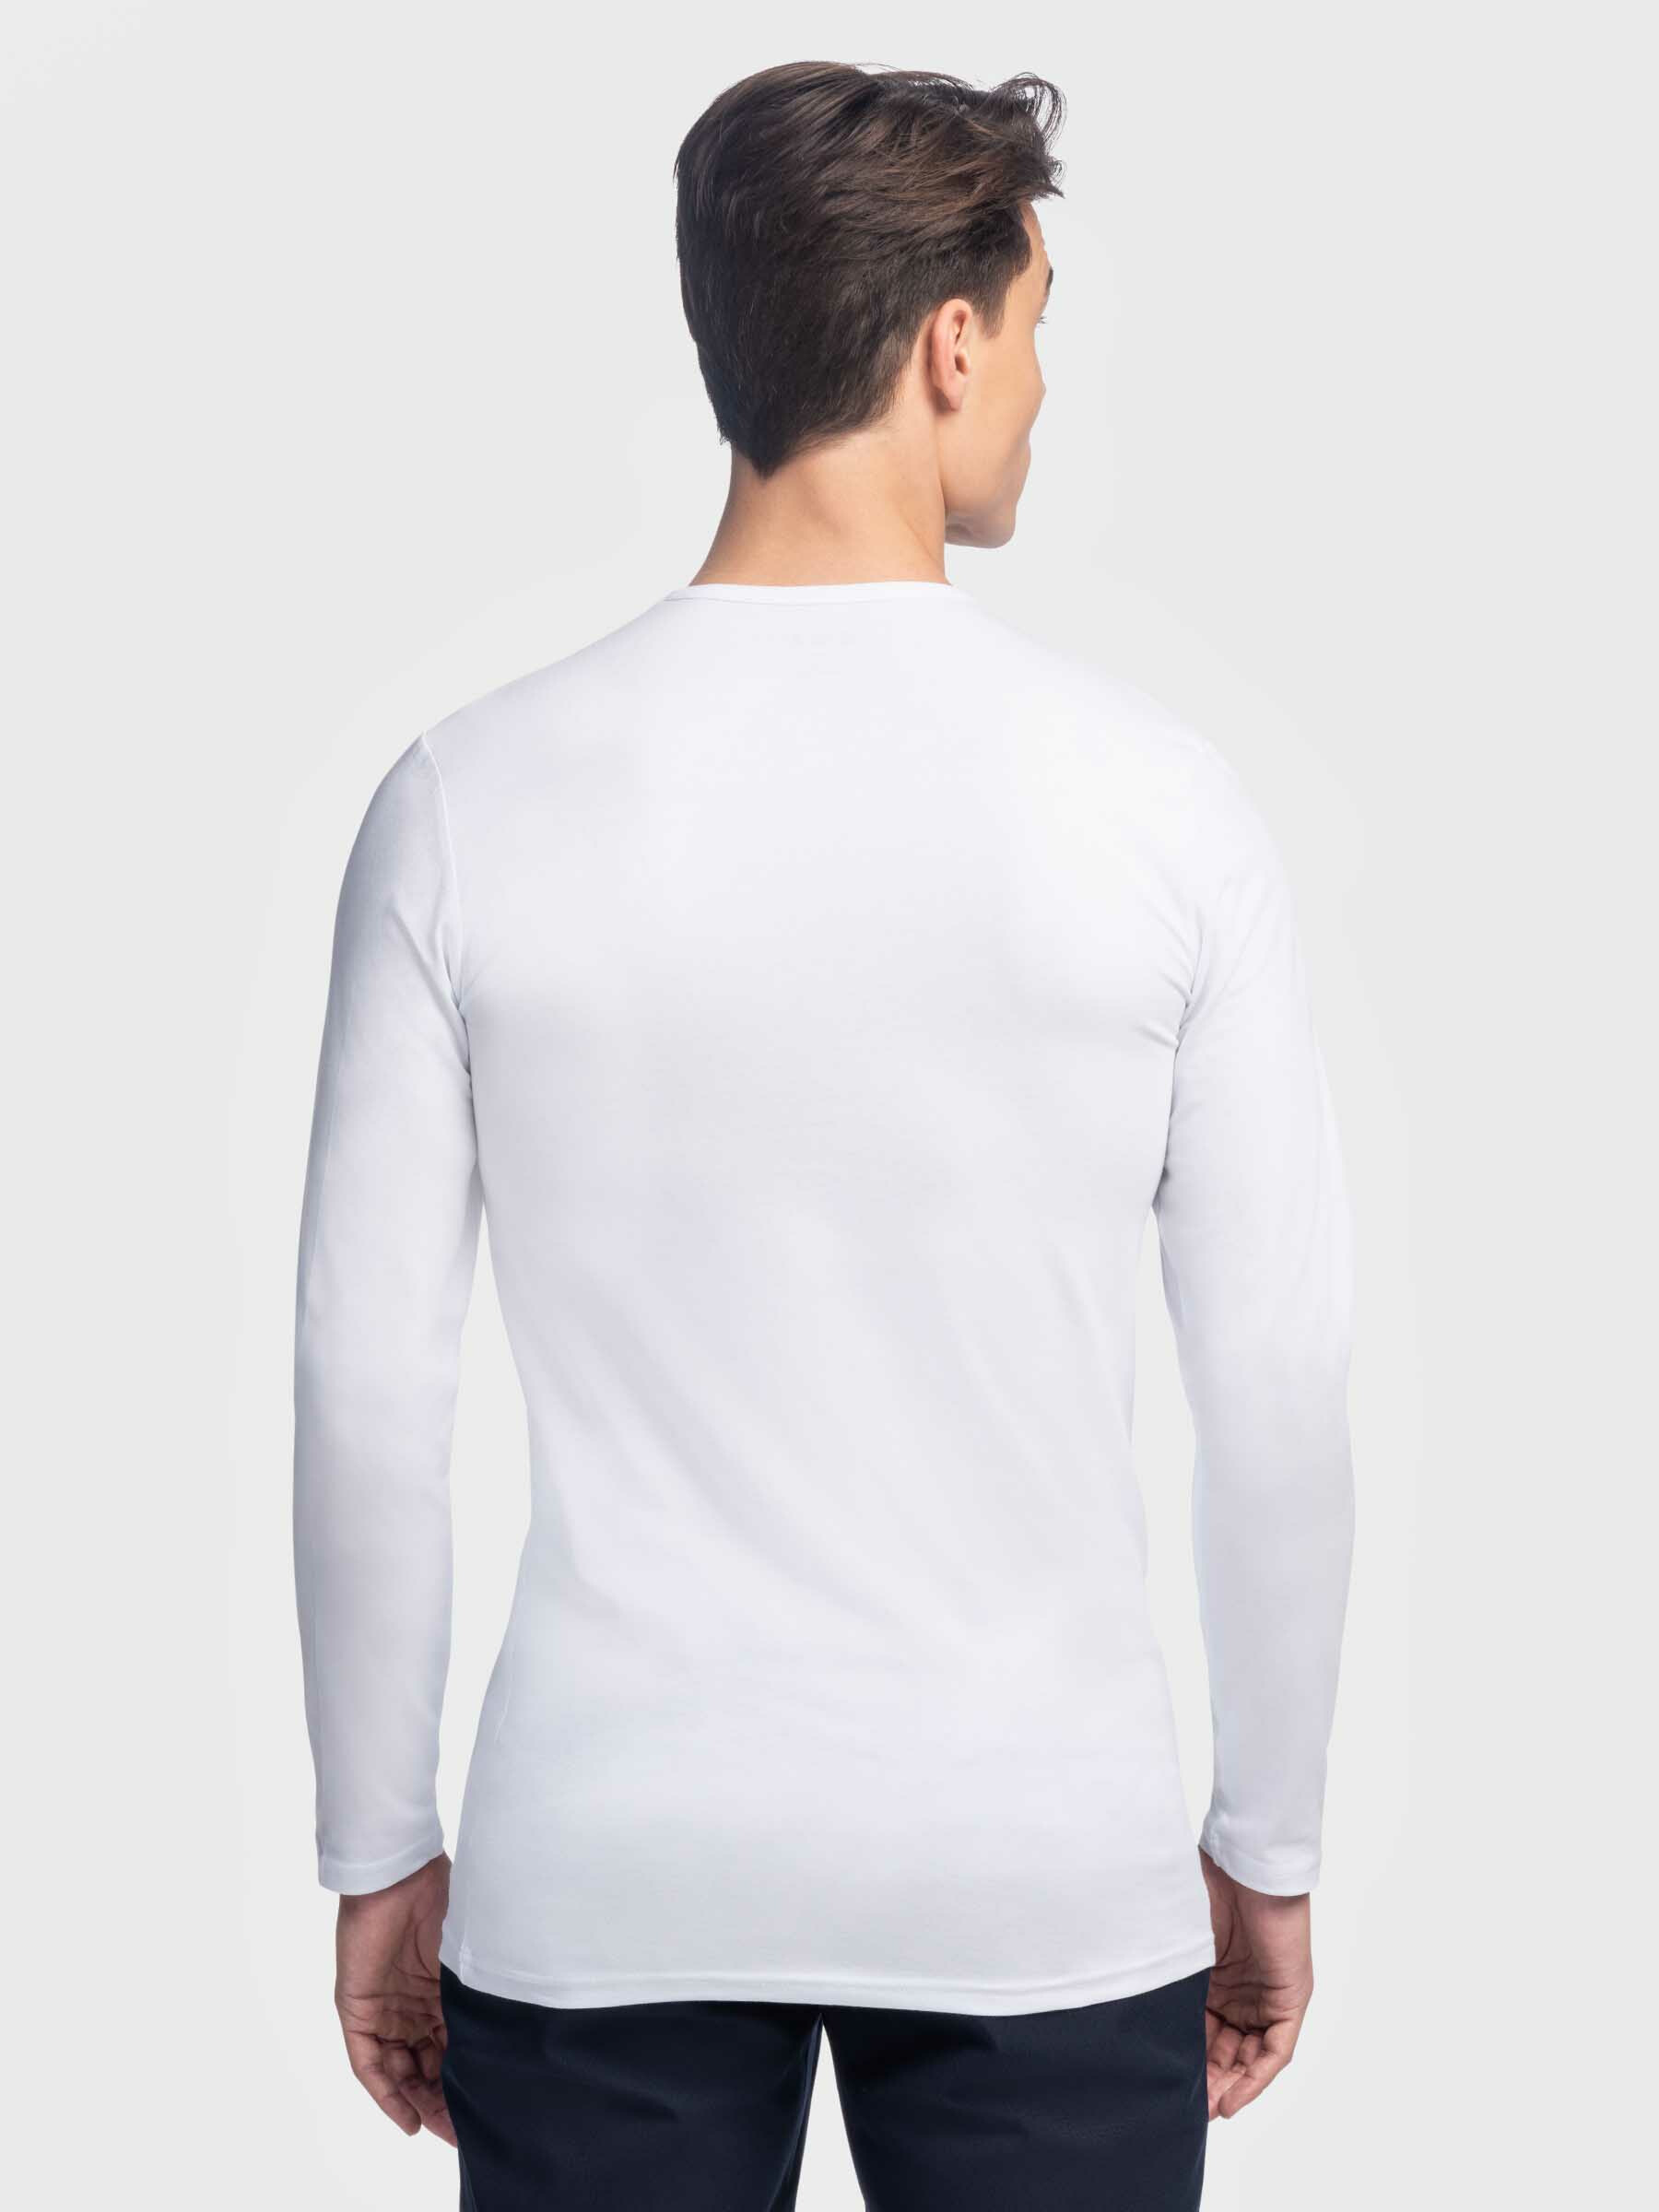 Registratie verkoudheid Caroline London Longsleeves Shirt Wit kopen? Voor lange heren - Girav